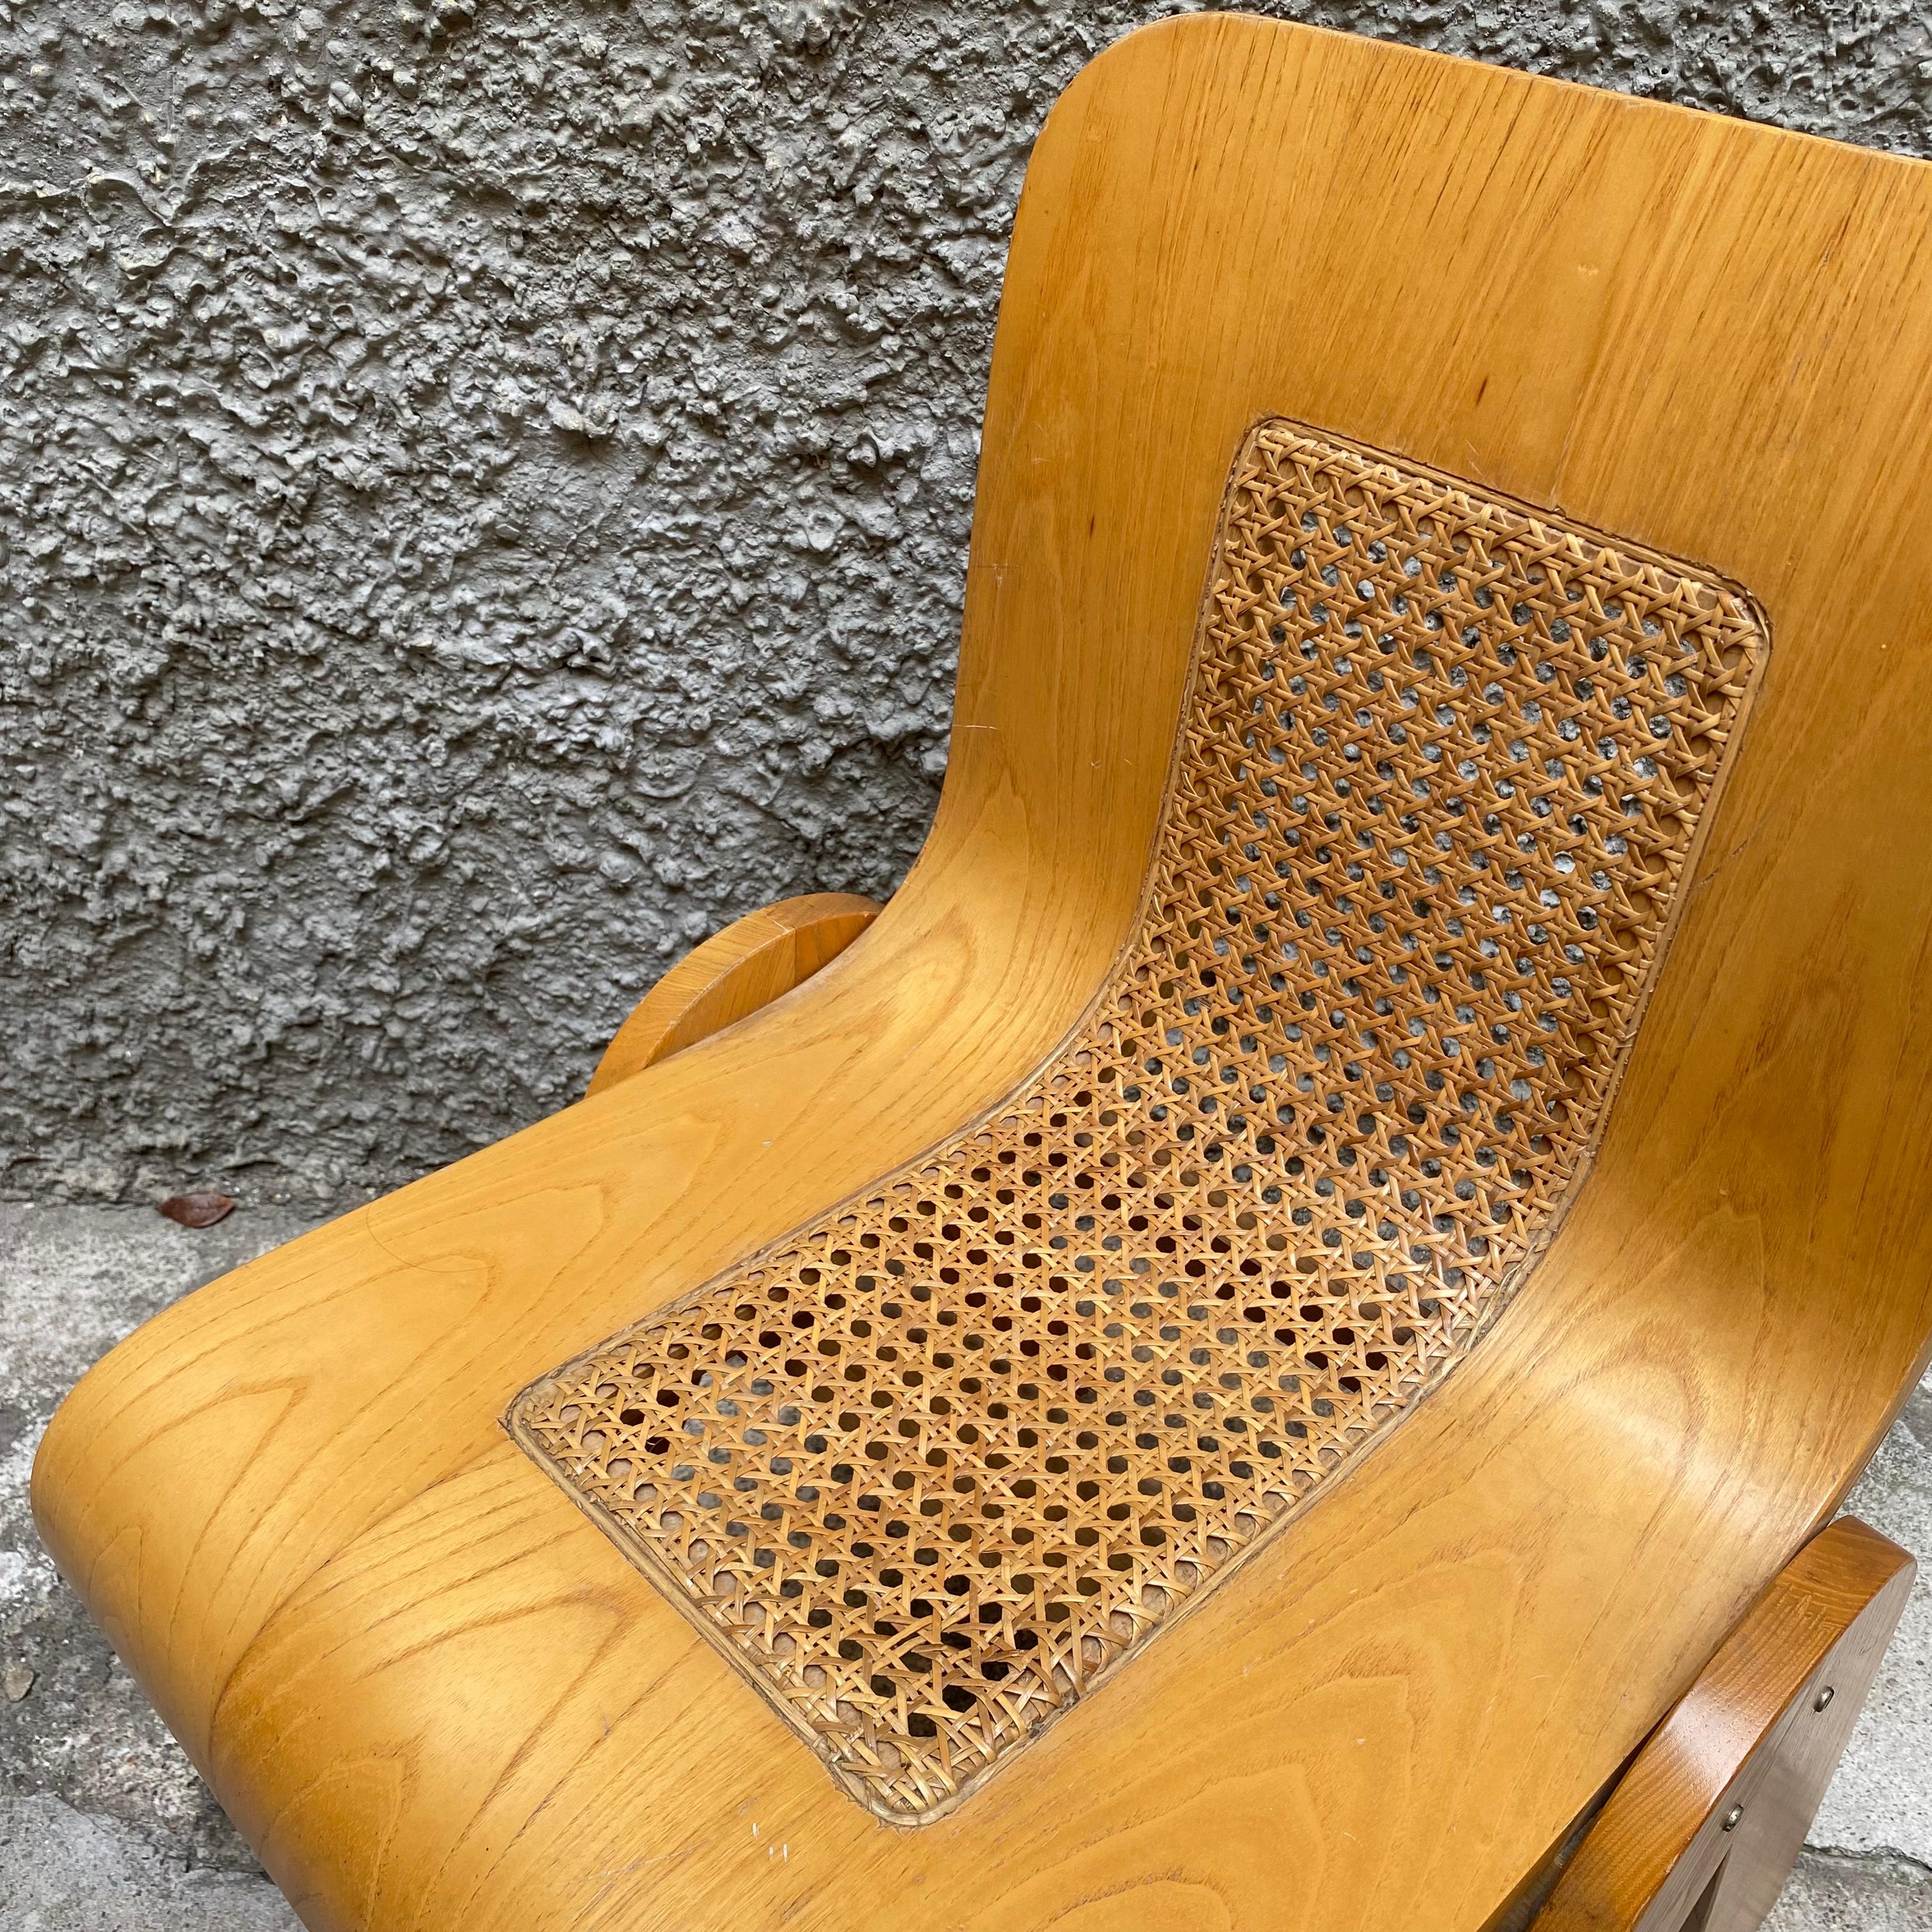 Design inventif de l'Italien Gigi Sabadin, cette chaise est réalisée en contreplaqué cintré avec une finition plaquée. Le design organique semble être fait d'une seule pièce, qui est coupée et pliée. Le dossier présente un espace ouvert ajoutant une